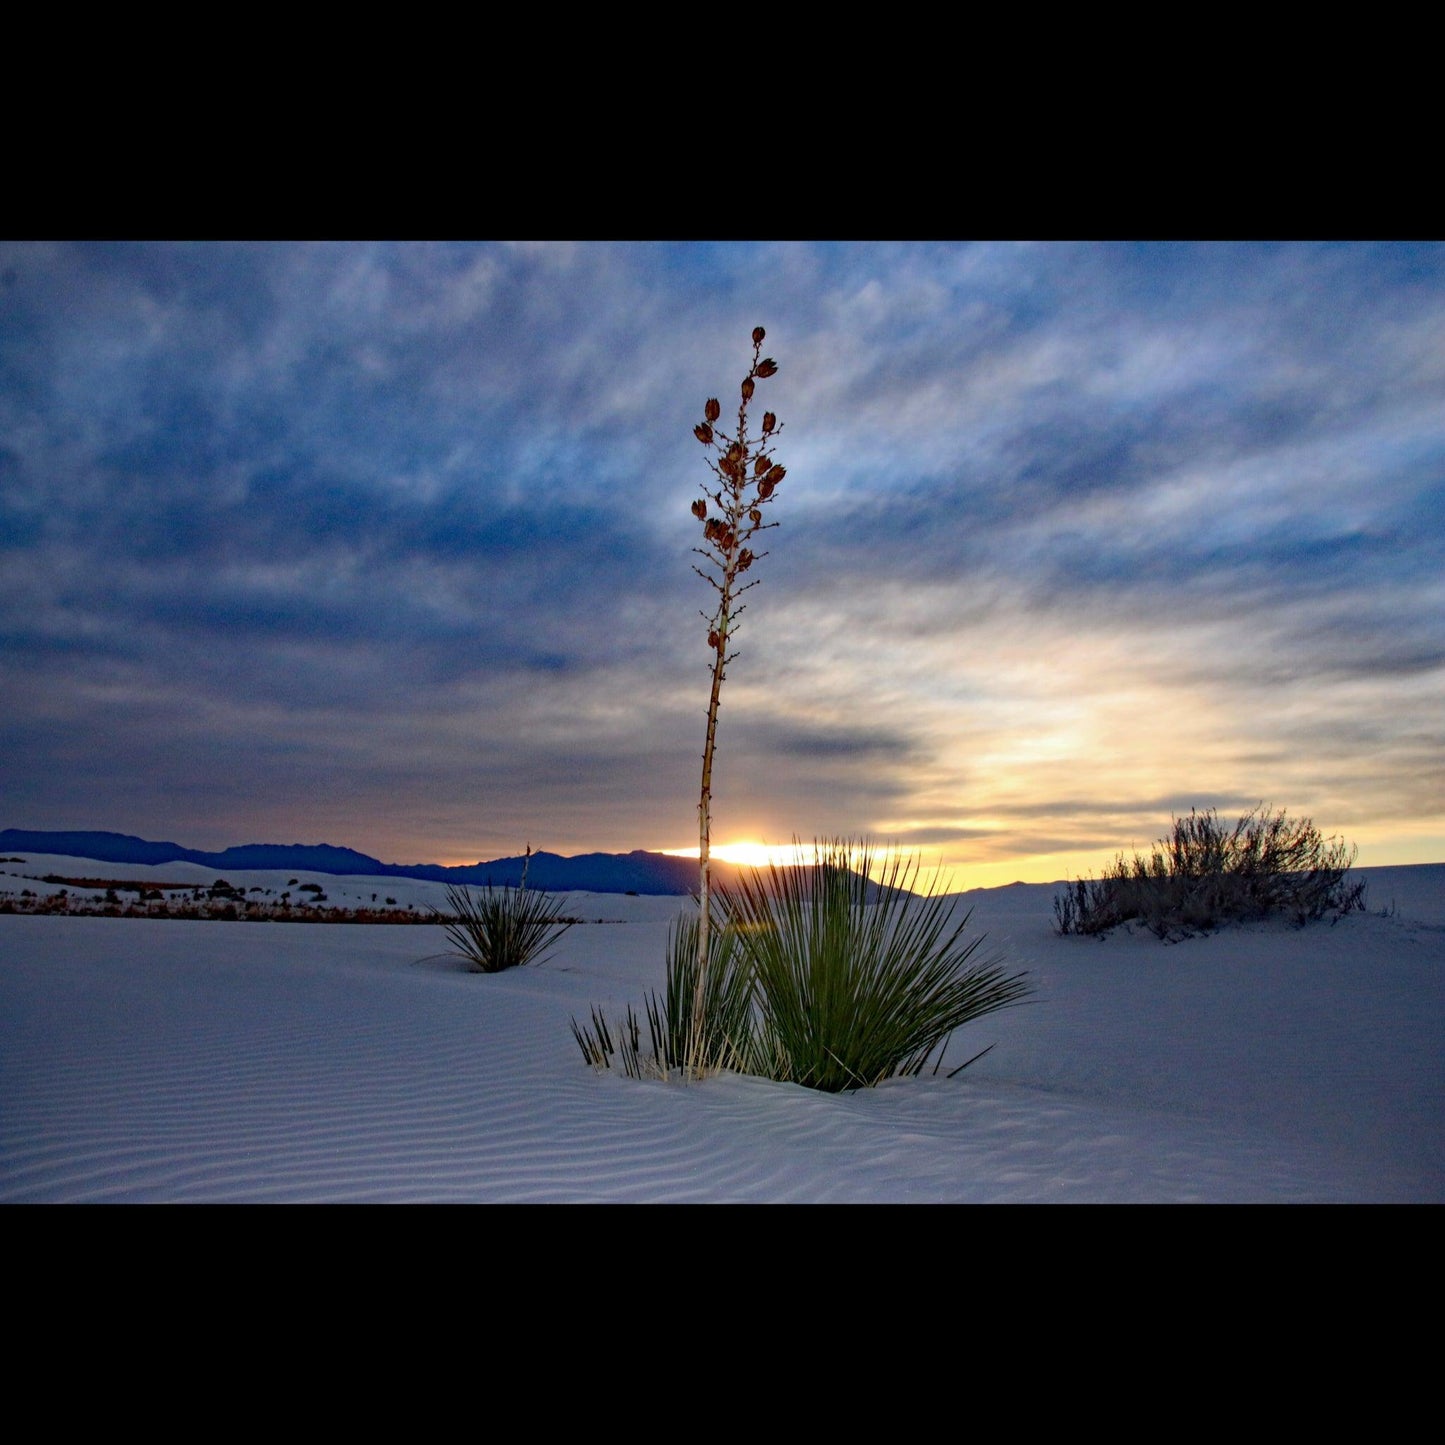 white-sands-at-sunset-v-isenhower-photography - V. Isenhower Photography